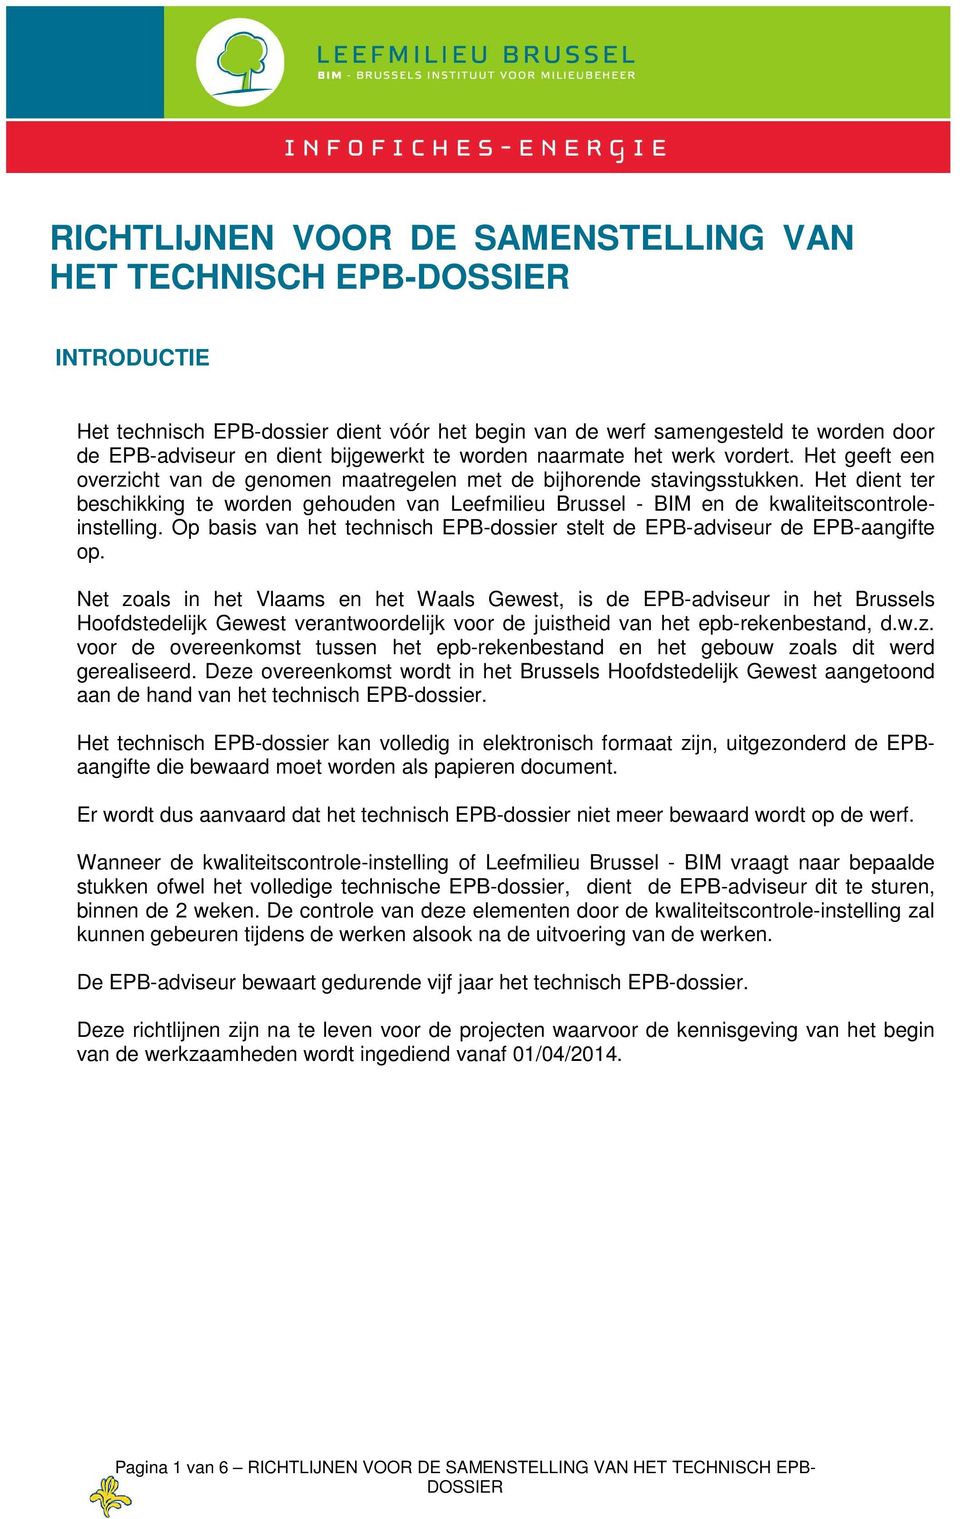 Het dient ter beschikking te worden gehouden van Leefmilieu Brussel - BIM en de kwaliteitscontroleinstelling. Op basis van het technisch EPB-dossier stelt de EPB-adviseur de EPB-aangifte op.